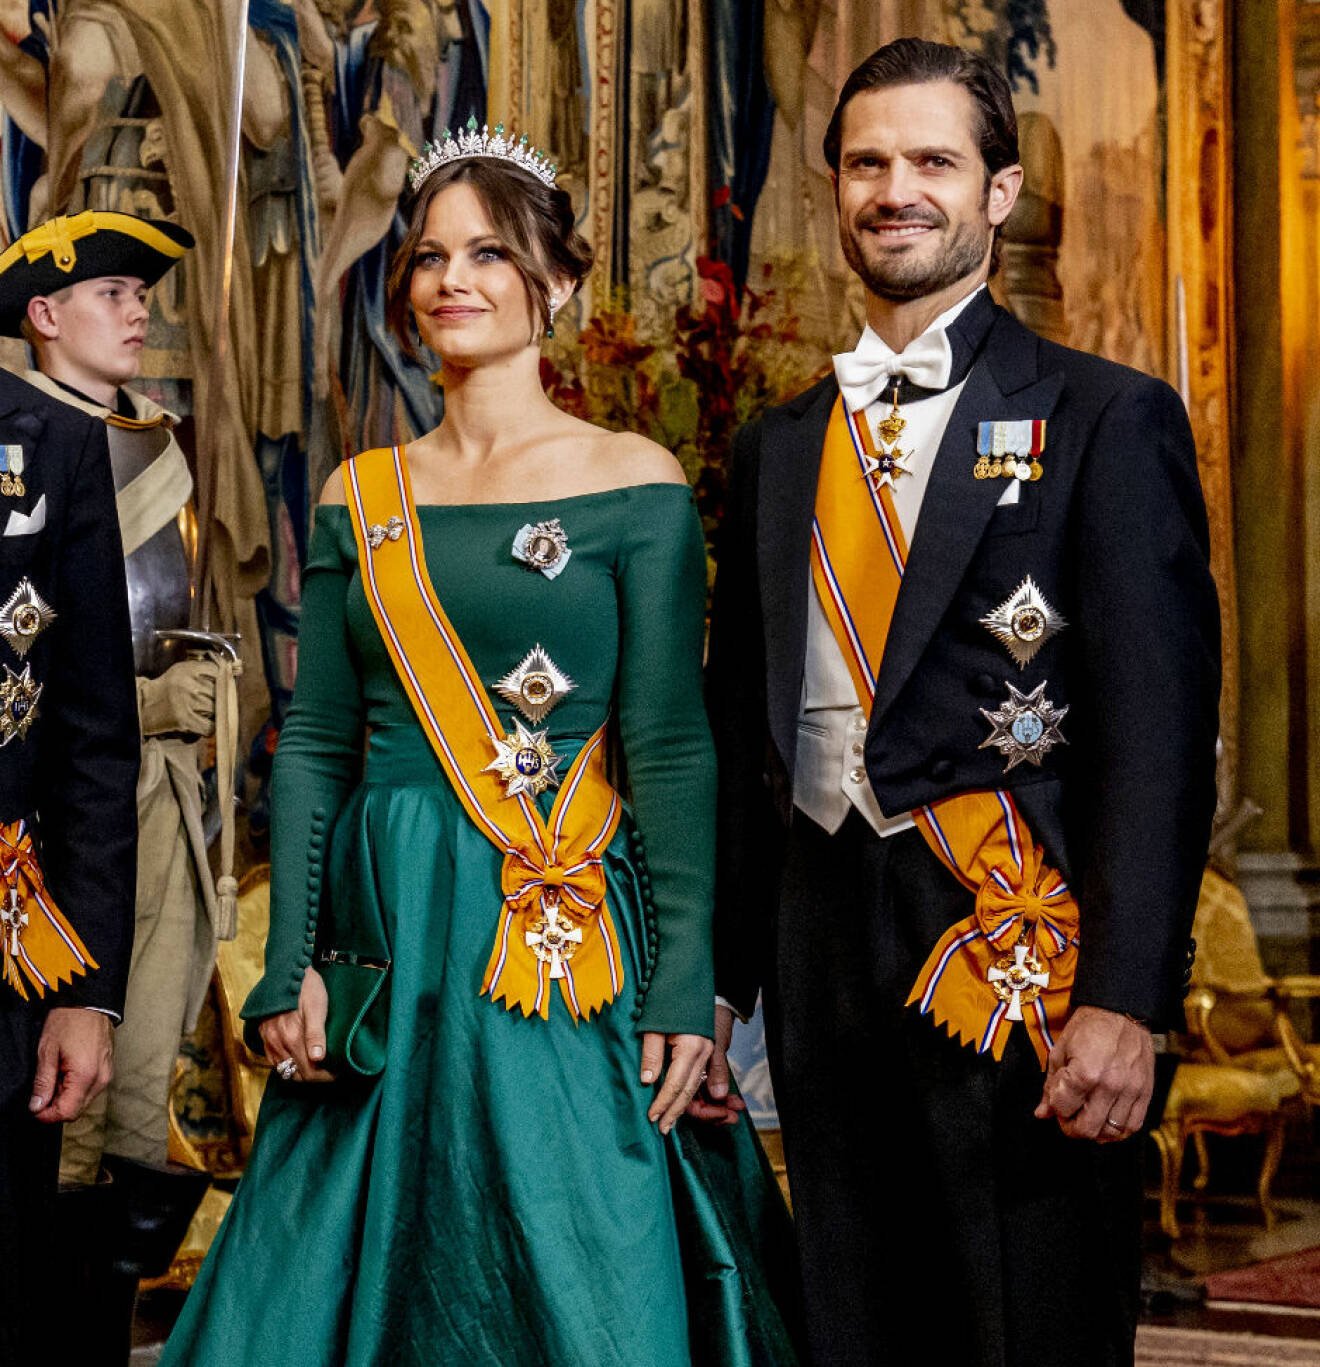 Prinsessan Sofia i ny grön aftonklänning under statsbesök från Nederländerna